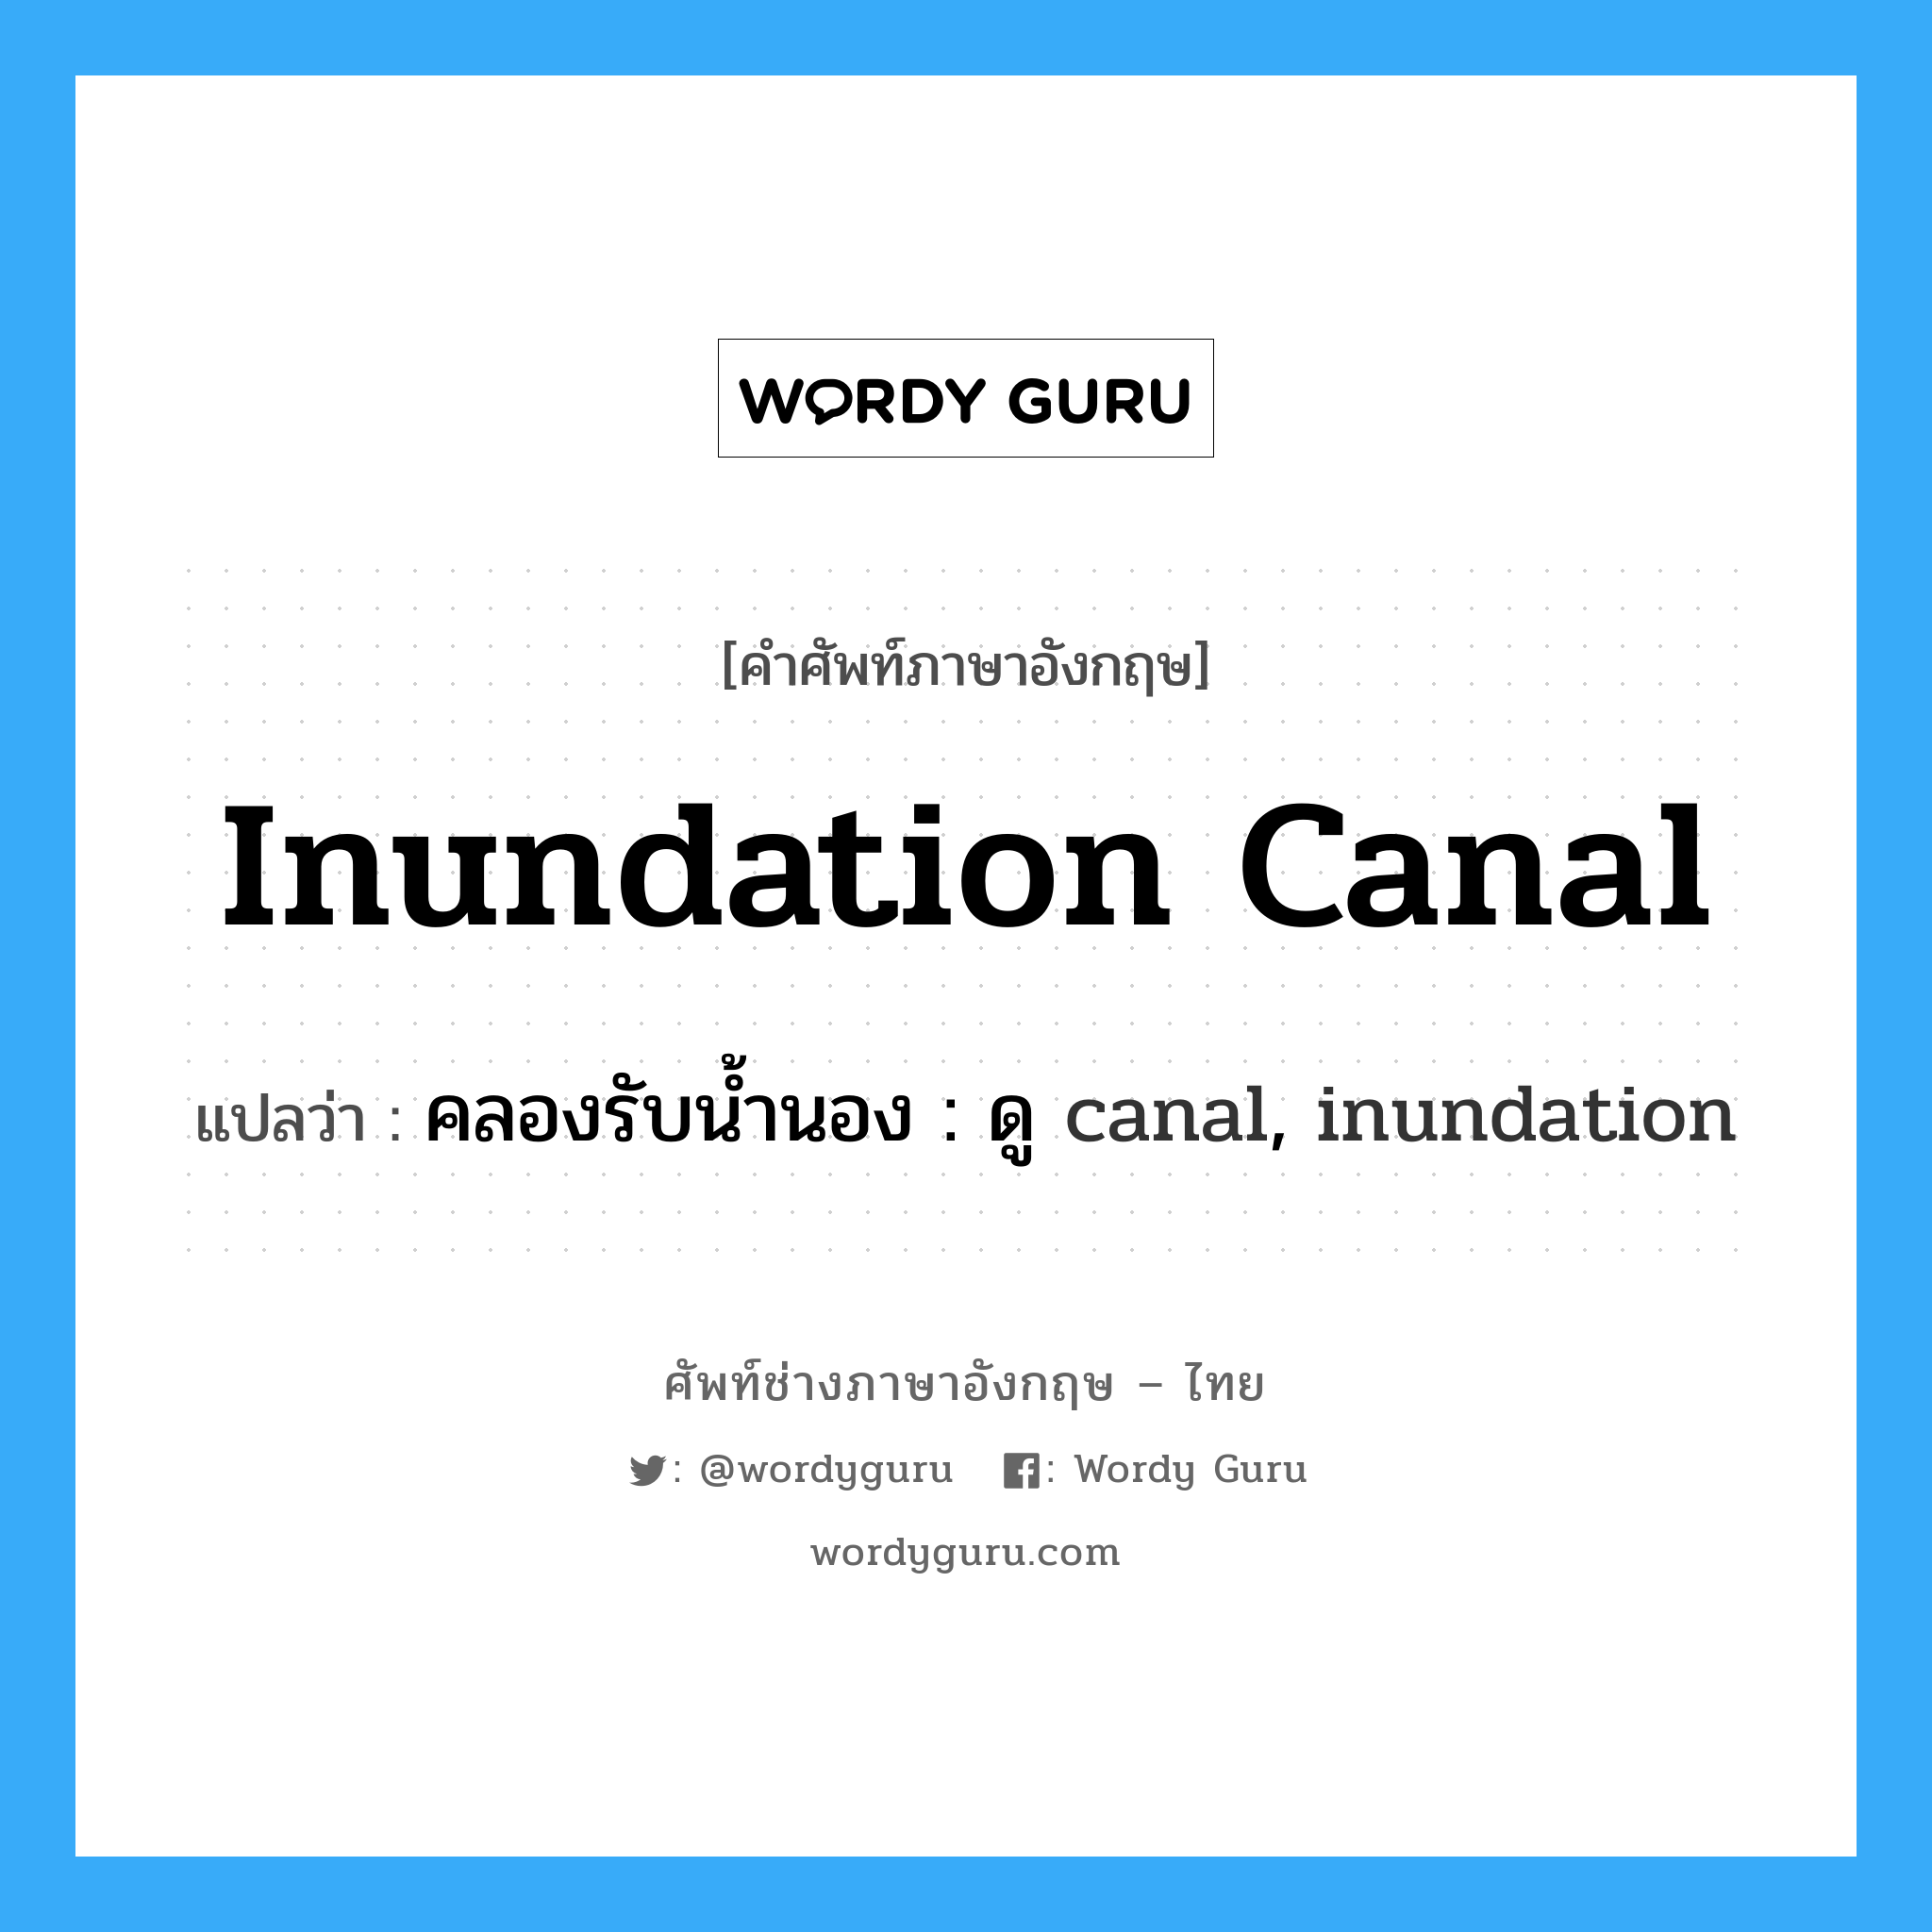 คลองรับน้ำนอง : ดู canal, inundation ภาษาอังกฤษ?, คำศัพท์ช่างภาษาอังกฤษ - ไทย คลองรับน้ำนอง : ดู canal, inundation คำศัพท์ภาษาอังกฤษ คลองรับน้ำนอง : ดู canal, inundation แปลว่า inundation canal